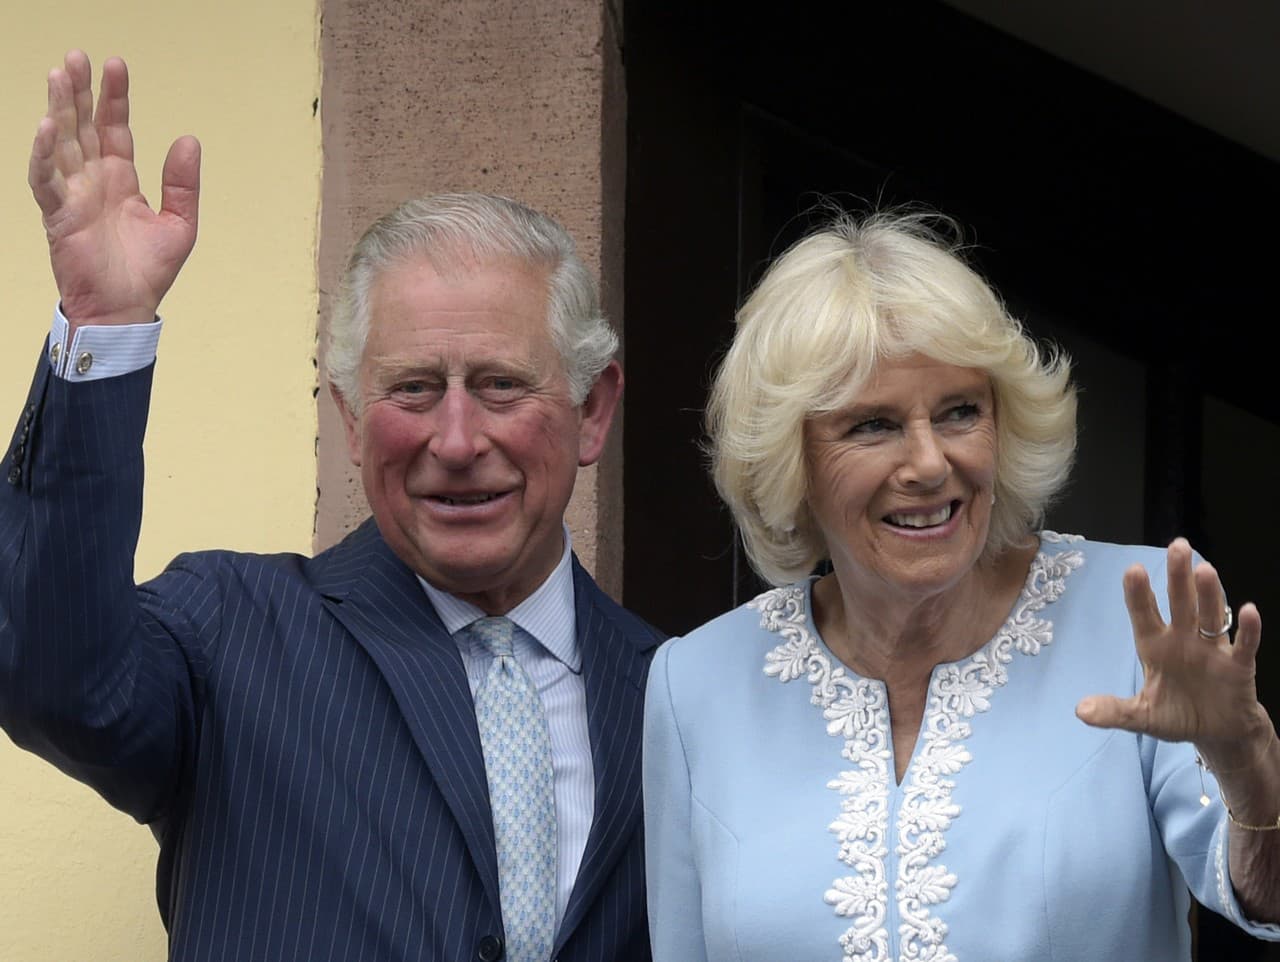 Princ Charles s manželkou Camillou.